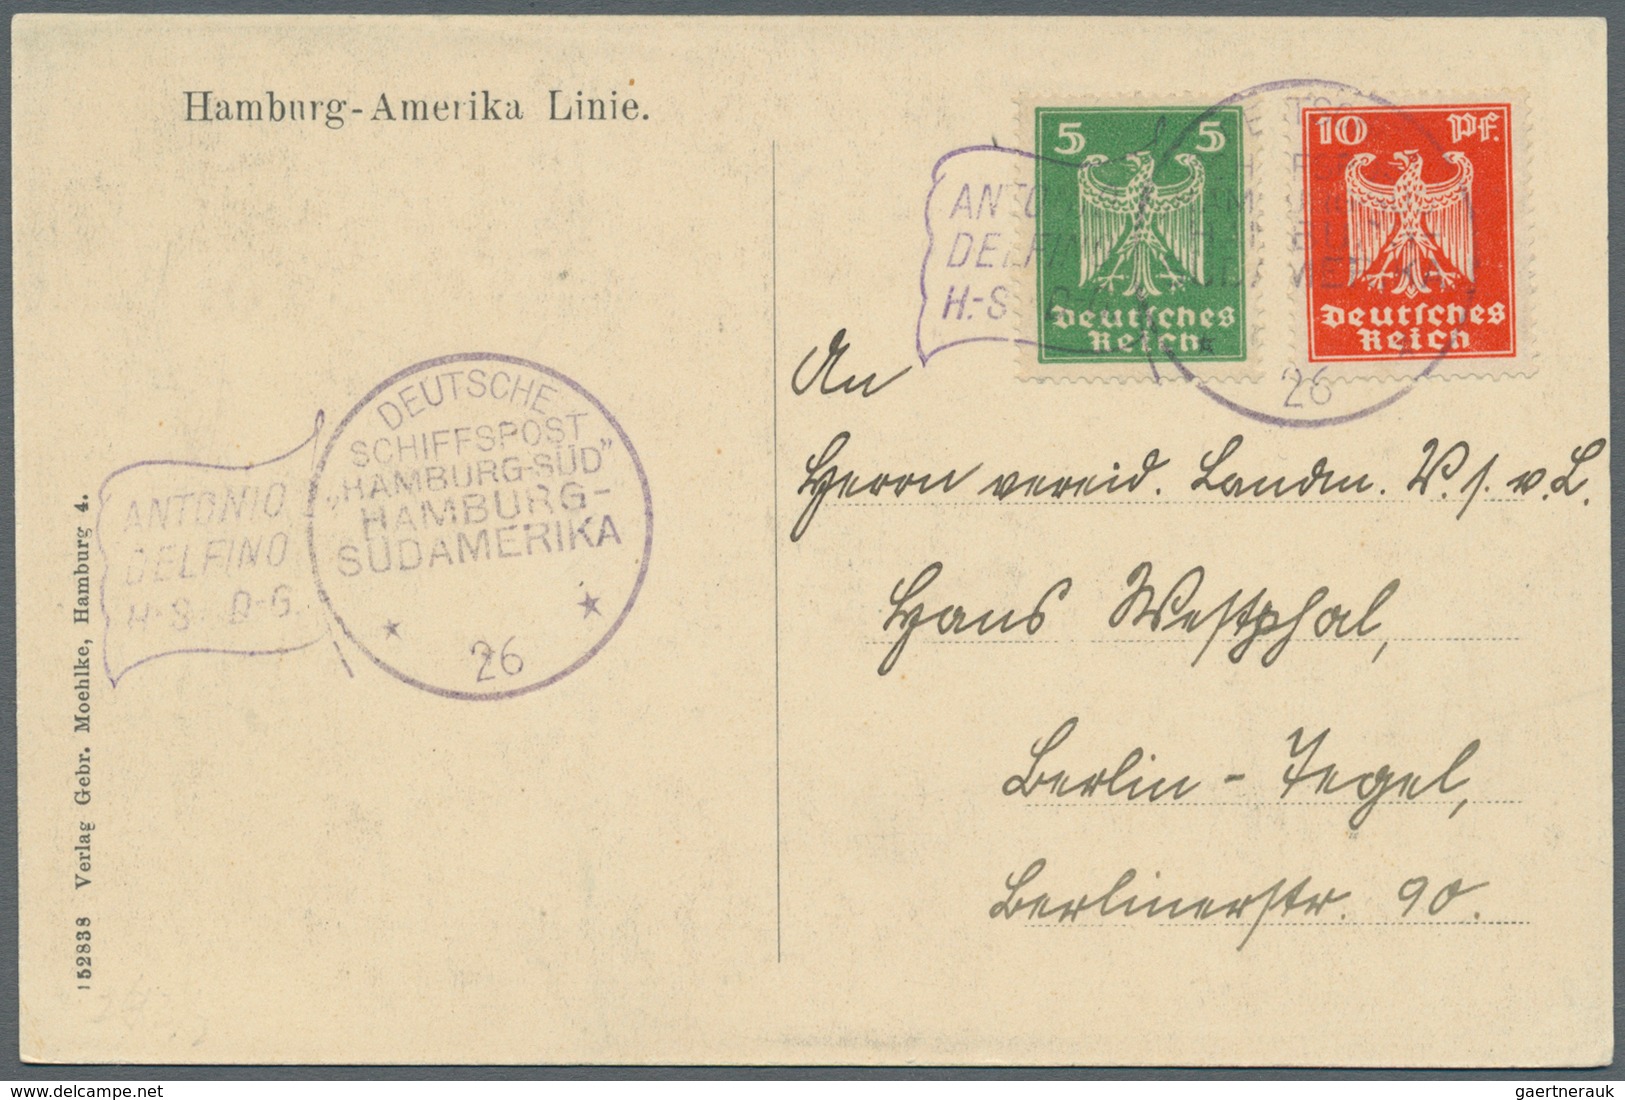 24855 Schiffspost Deutschland: 1900/1939, kleine Sammlung mit ca. 50 Briefen und Karten inkl. einiger unge